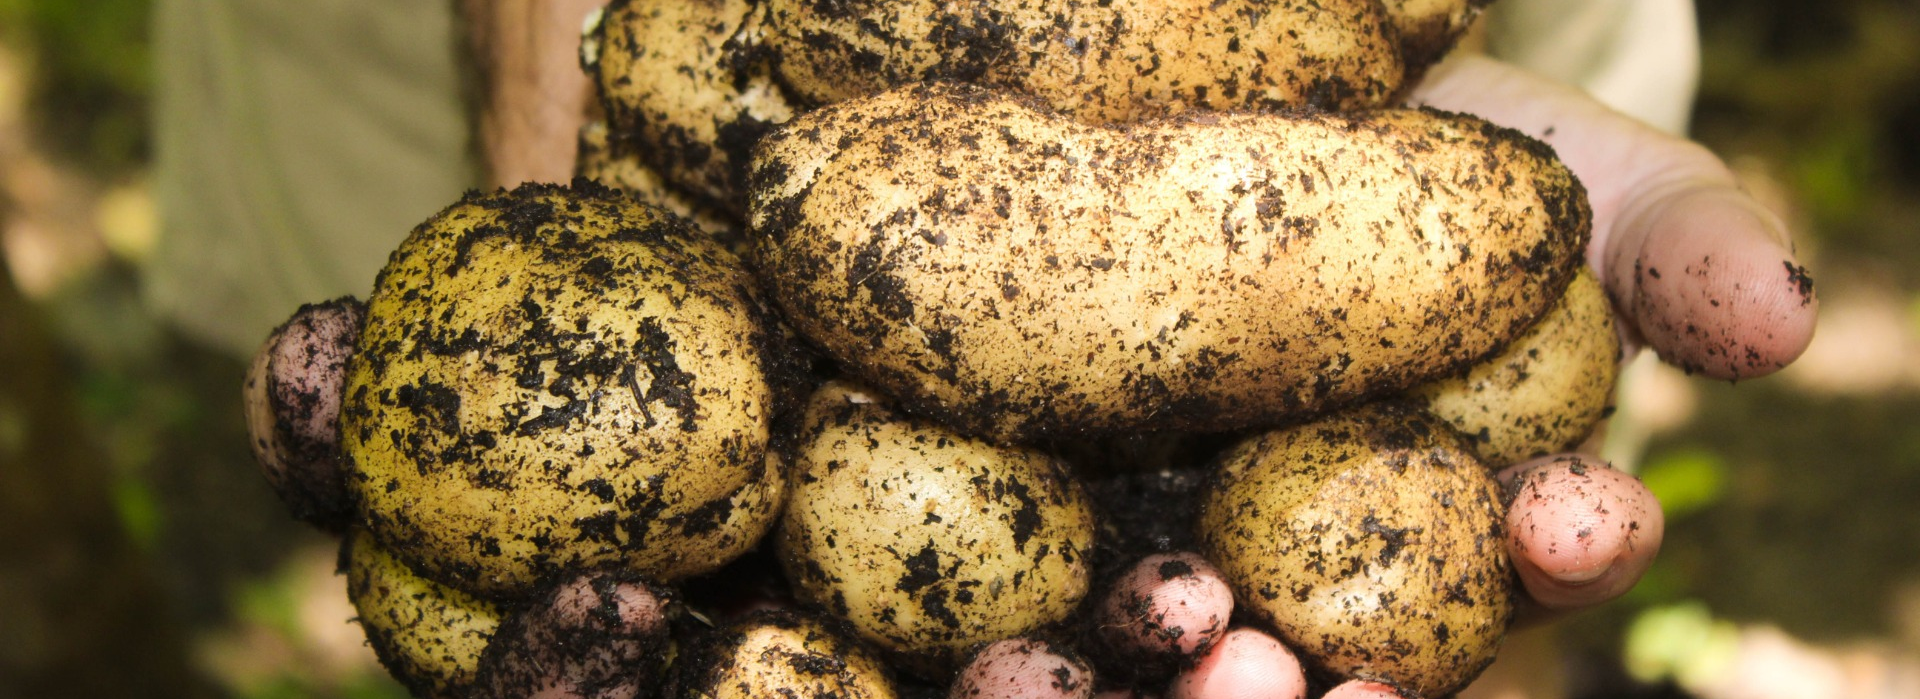 <p><strong>Naše brambory </strong>jsou registrovány jako <strong>produkt ekologického zemědělství </strong>s přiděleným certifikátem<strong> BIO produkt.</strong></p>